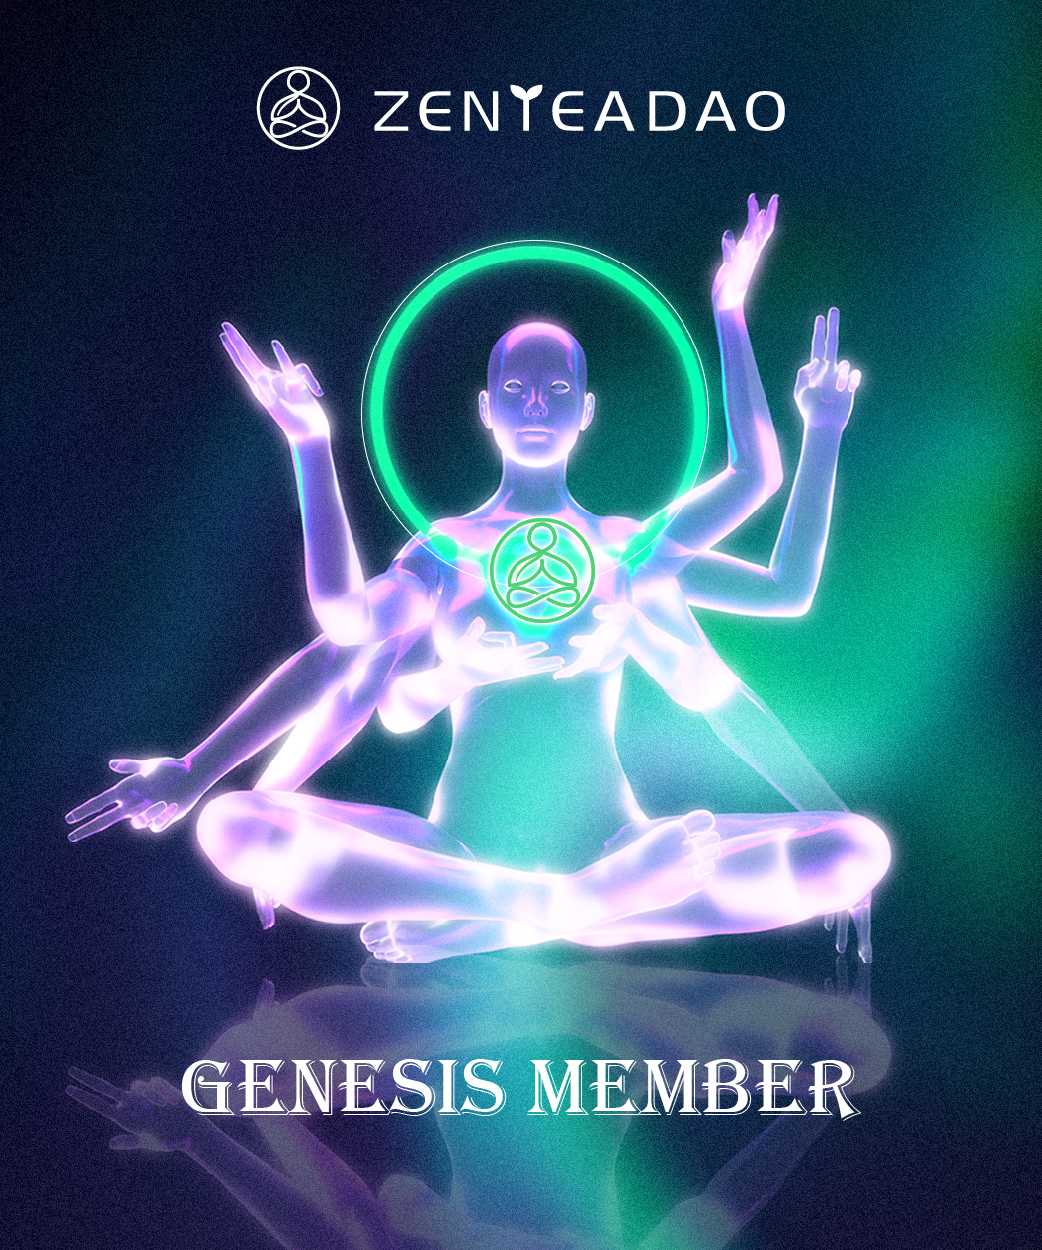 Nft ZenTea DAO Genesis member